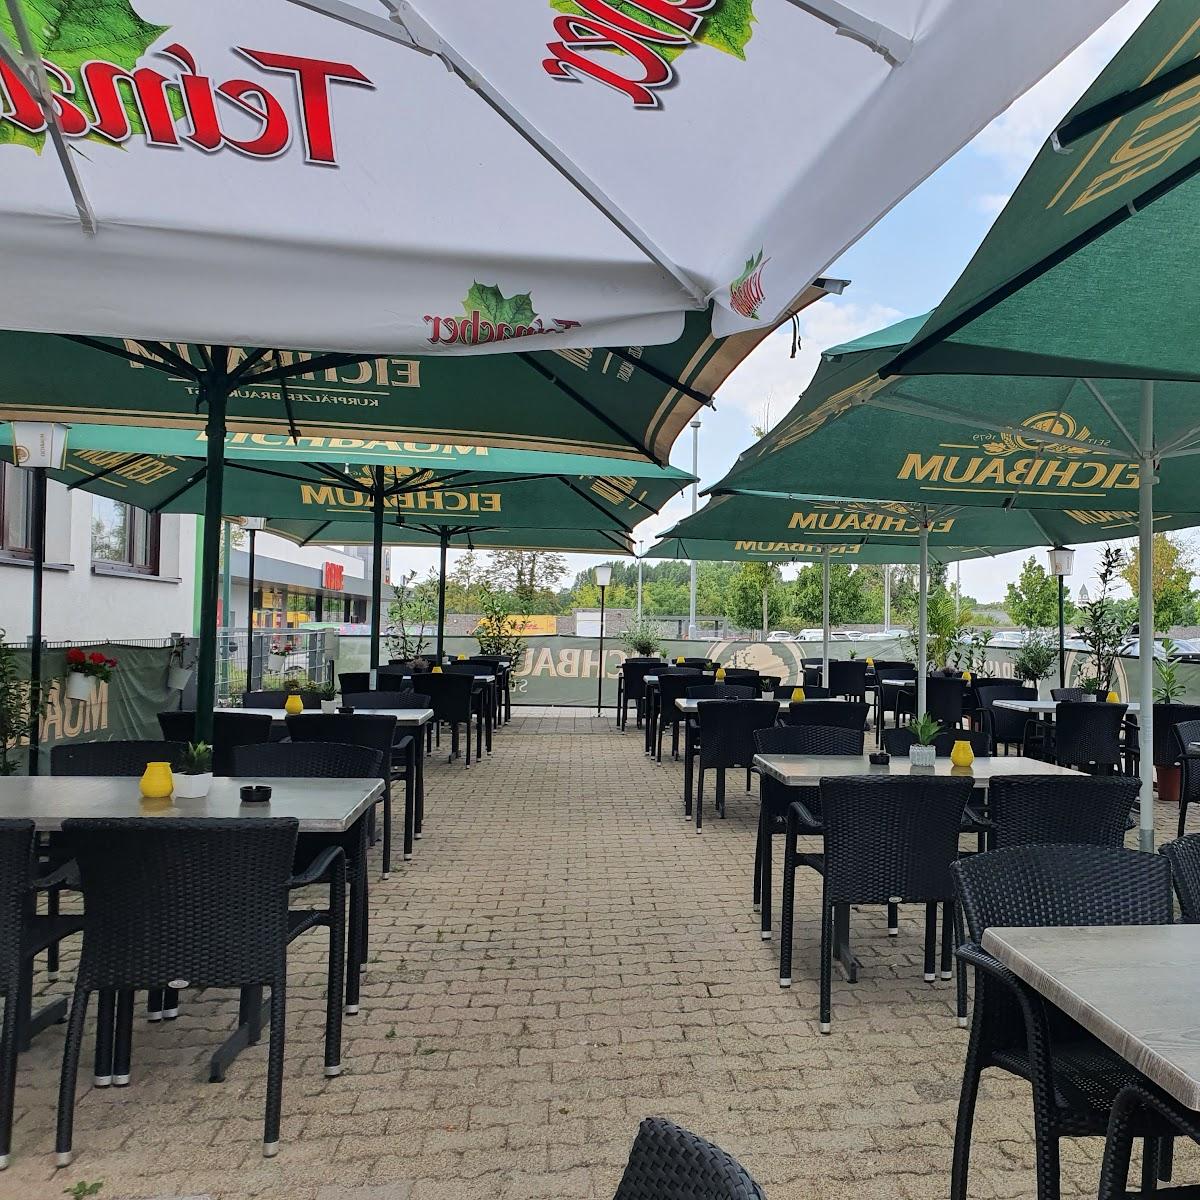 Restaurant "Meteora Restaurant" in Ketsch